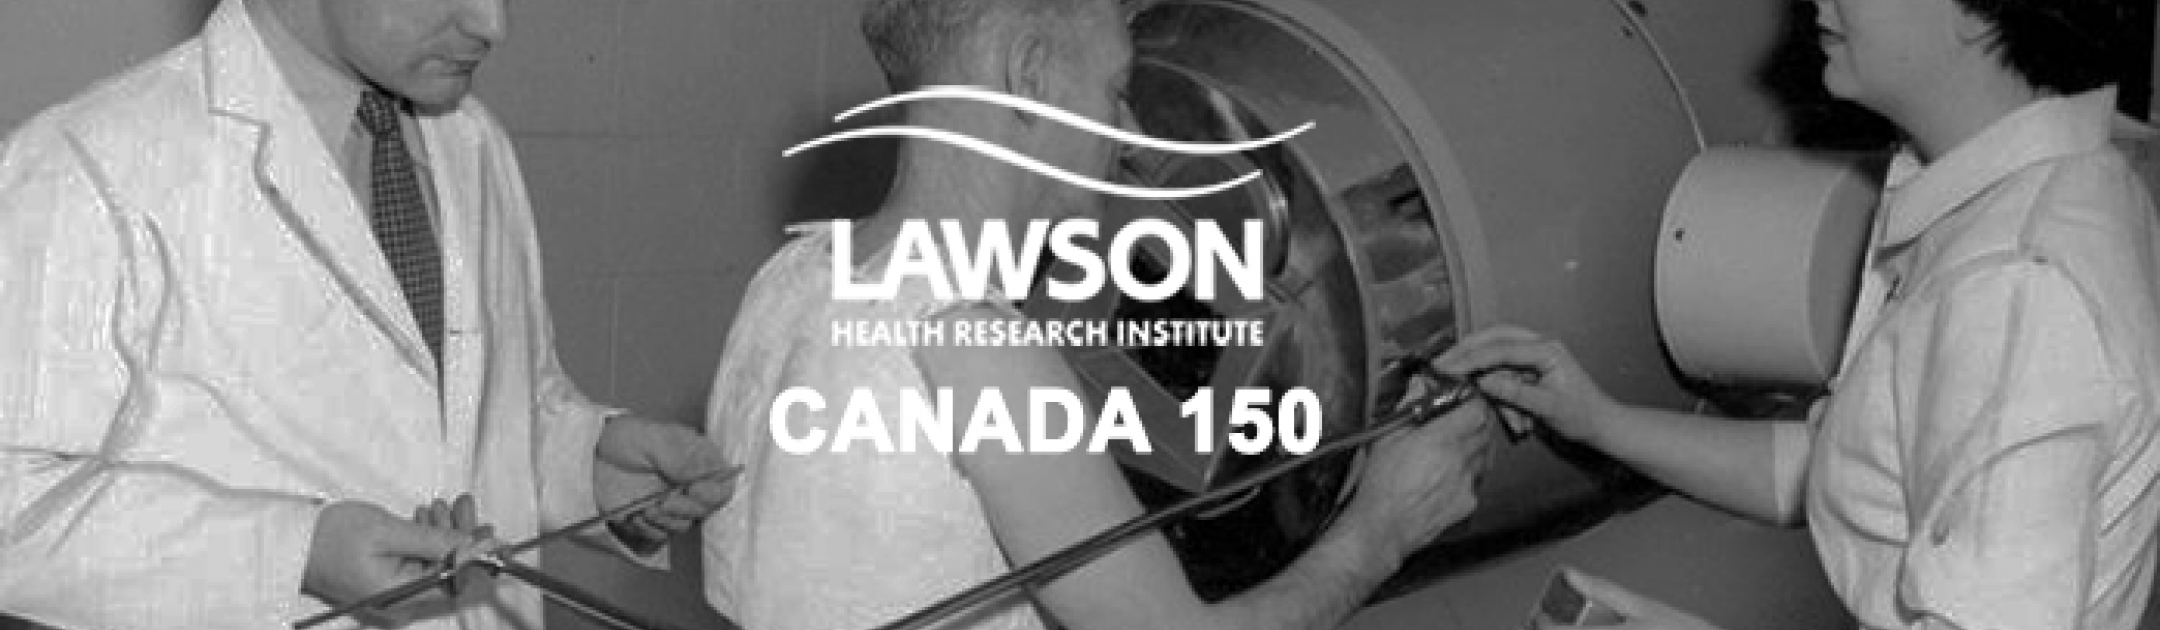 Lawson Canada 150 Promotion